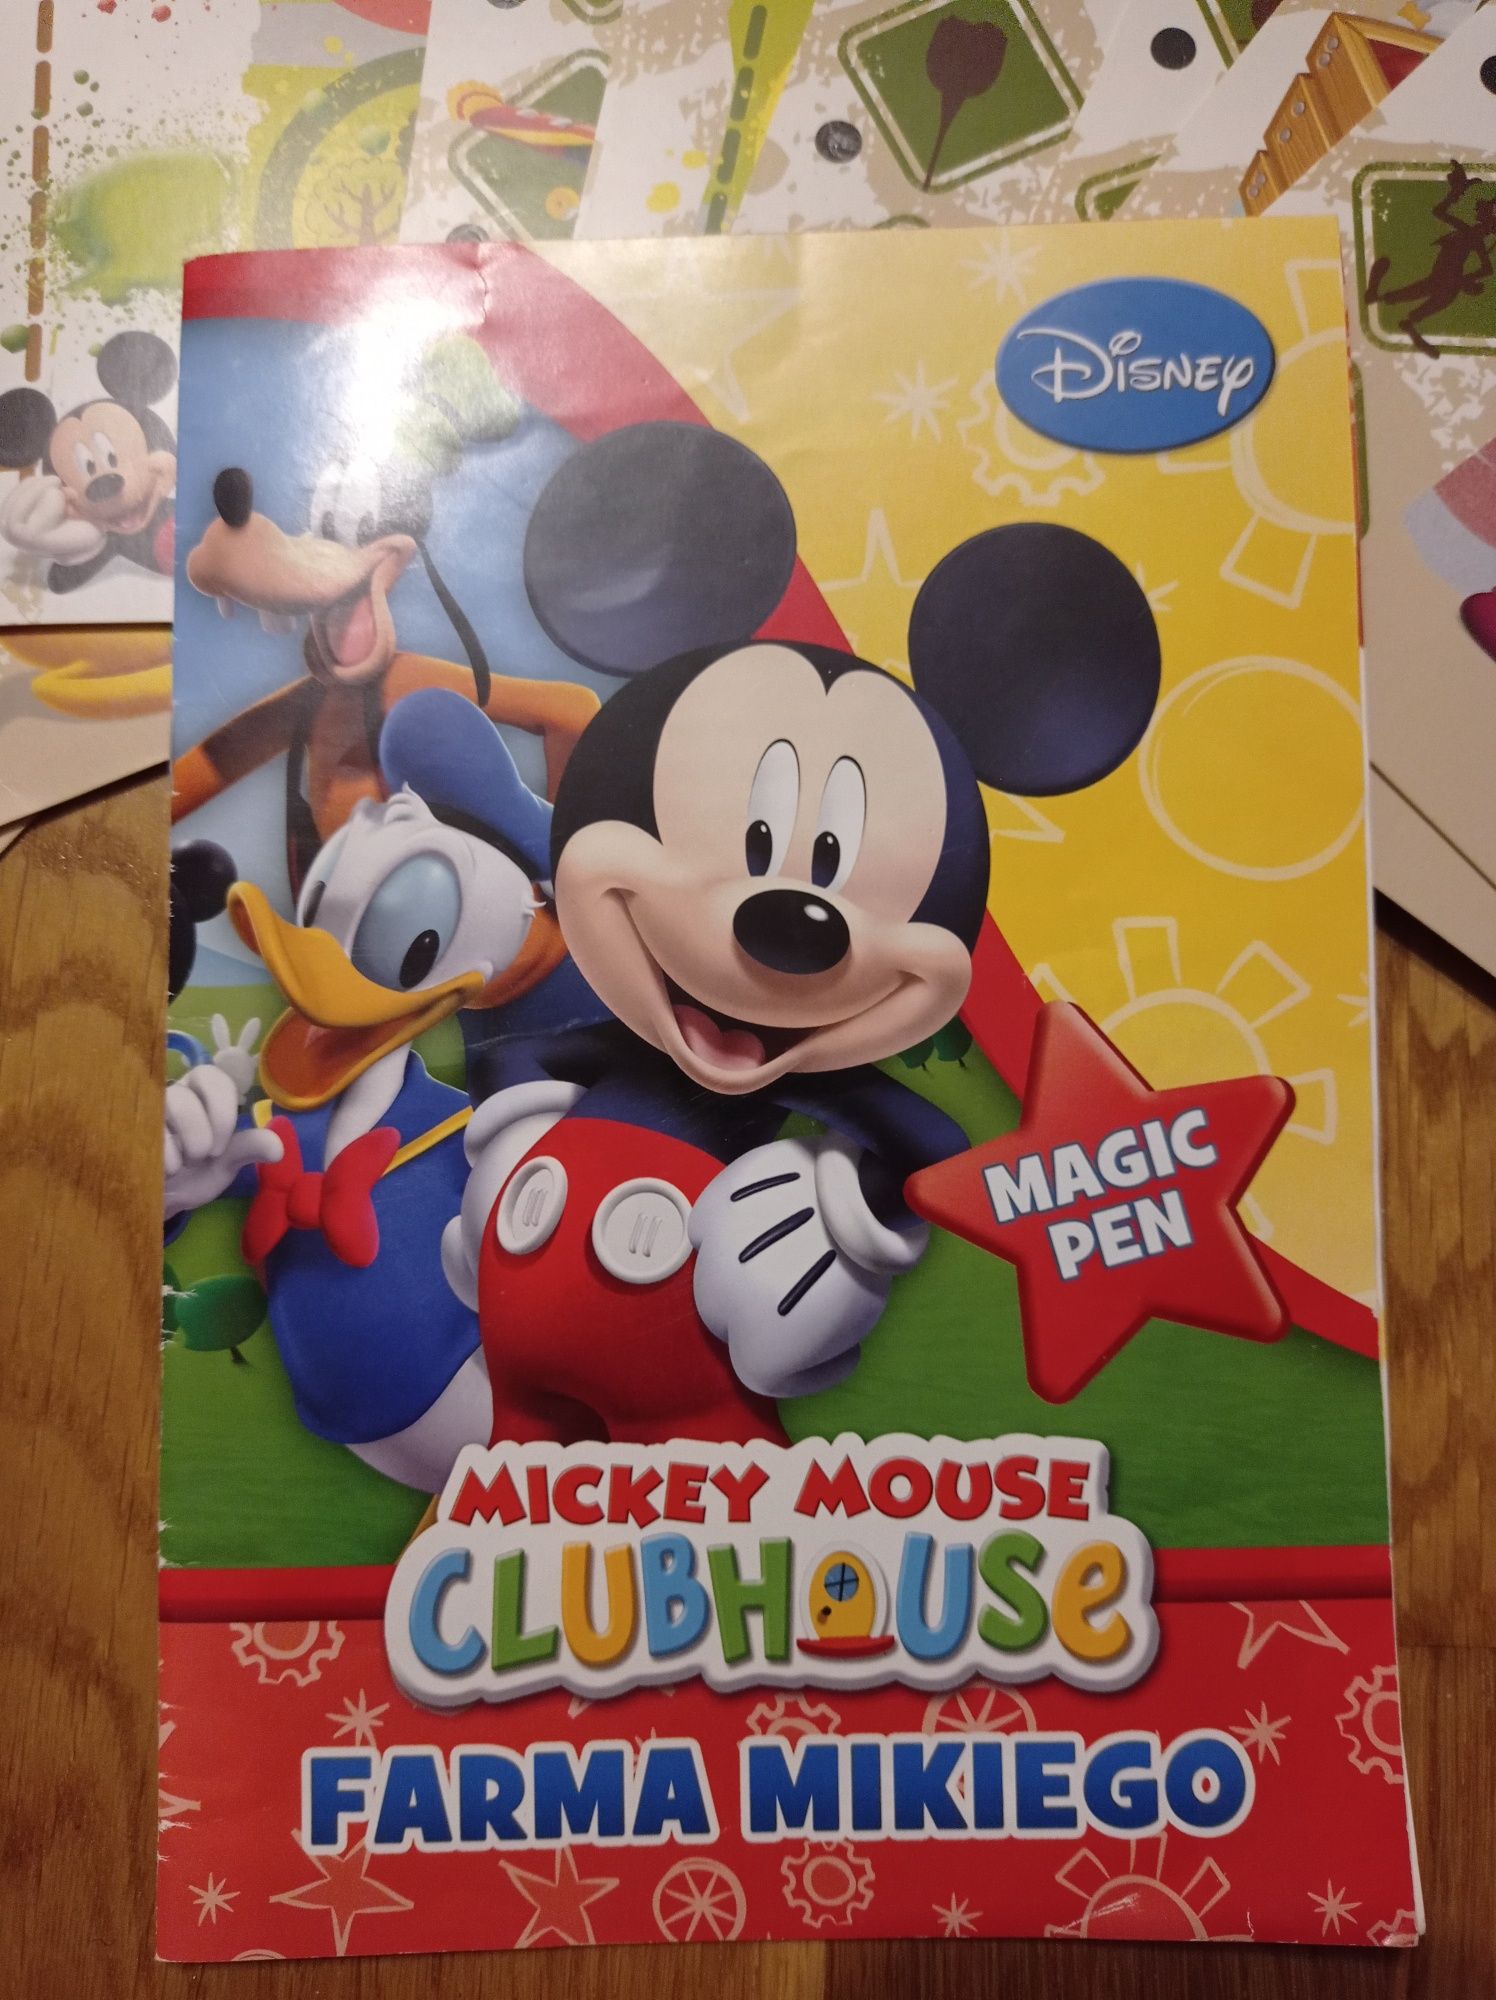 Trefl Mickey Mouse Club House Farma Mikiego plansze+magiczny długopis